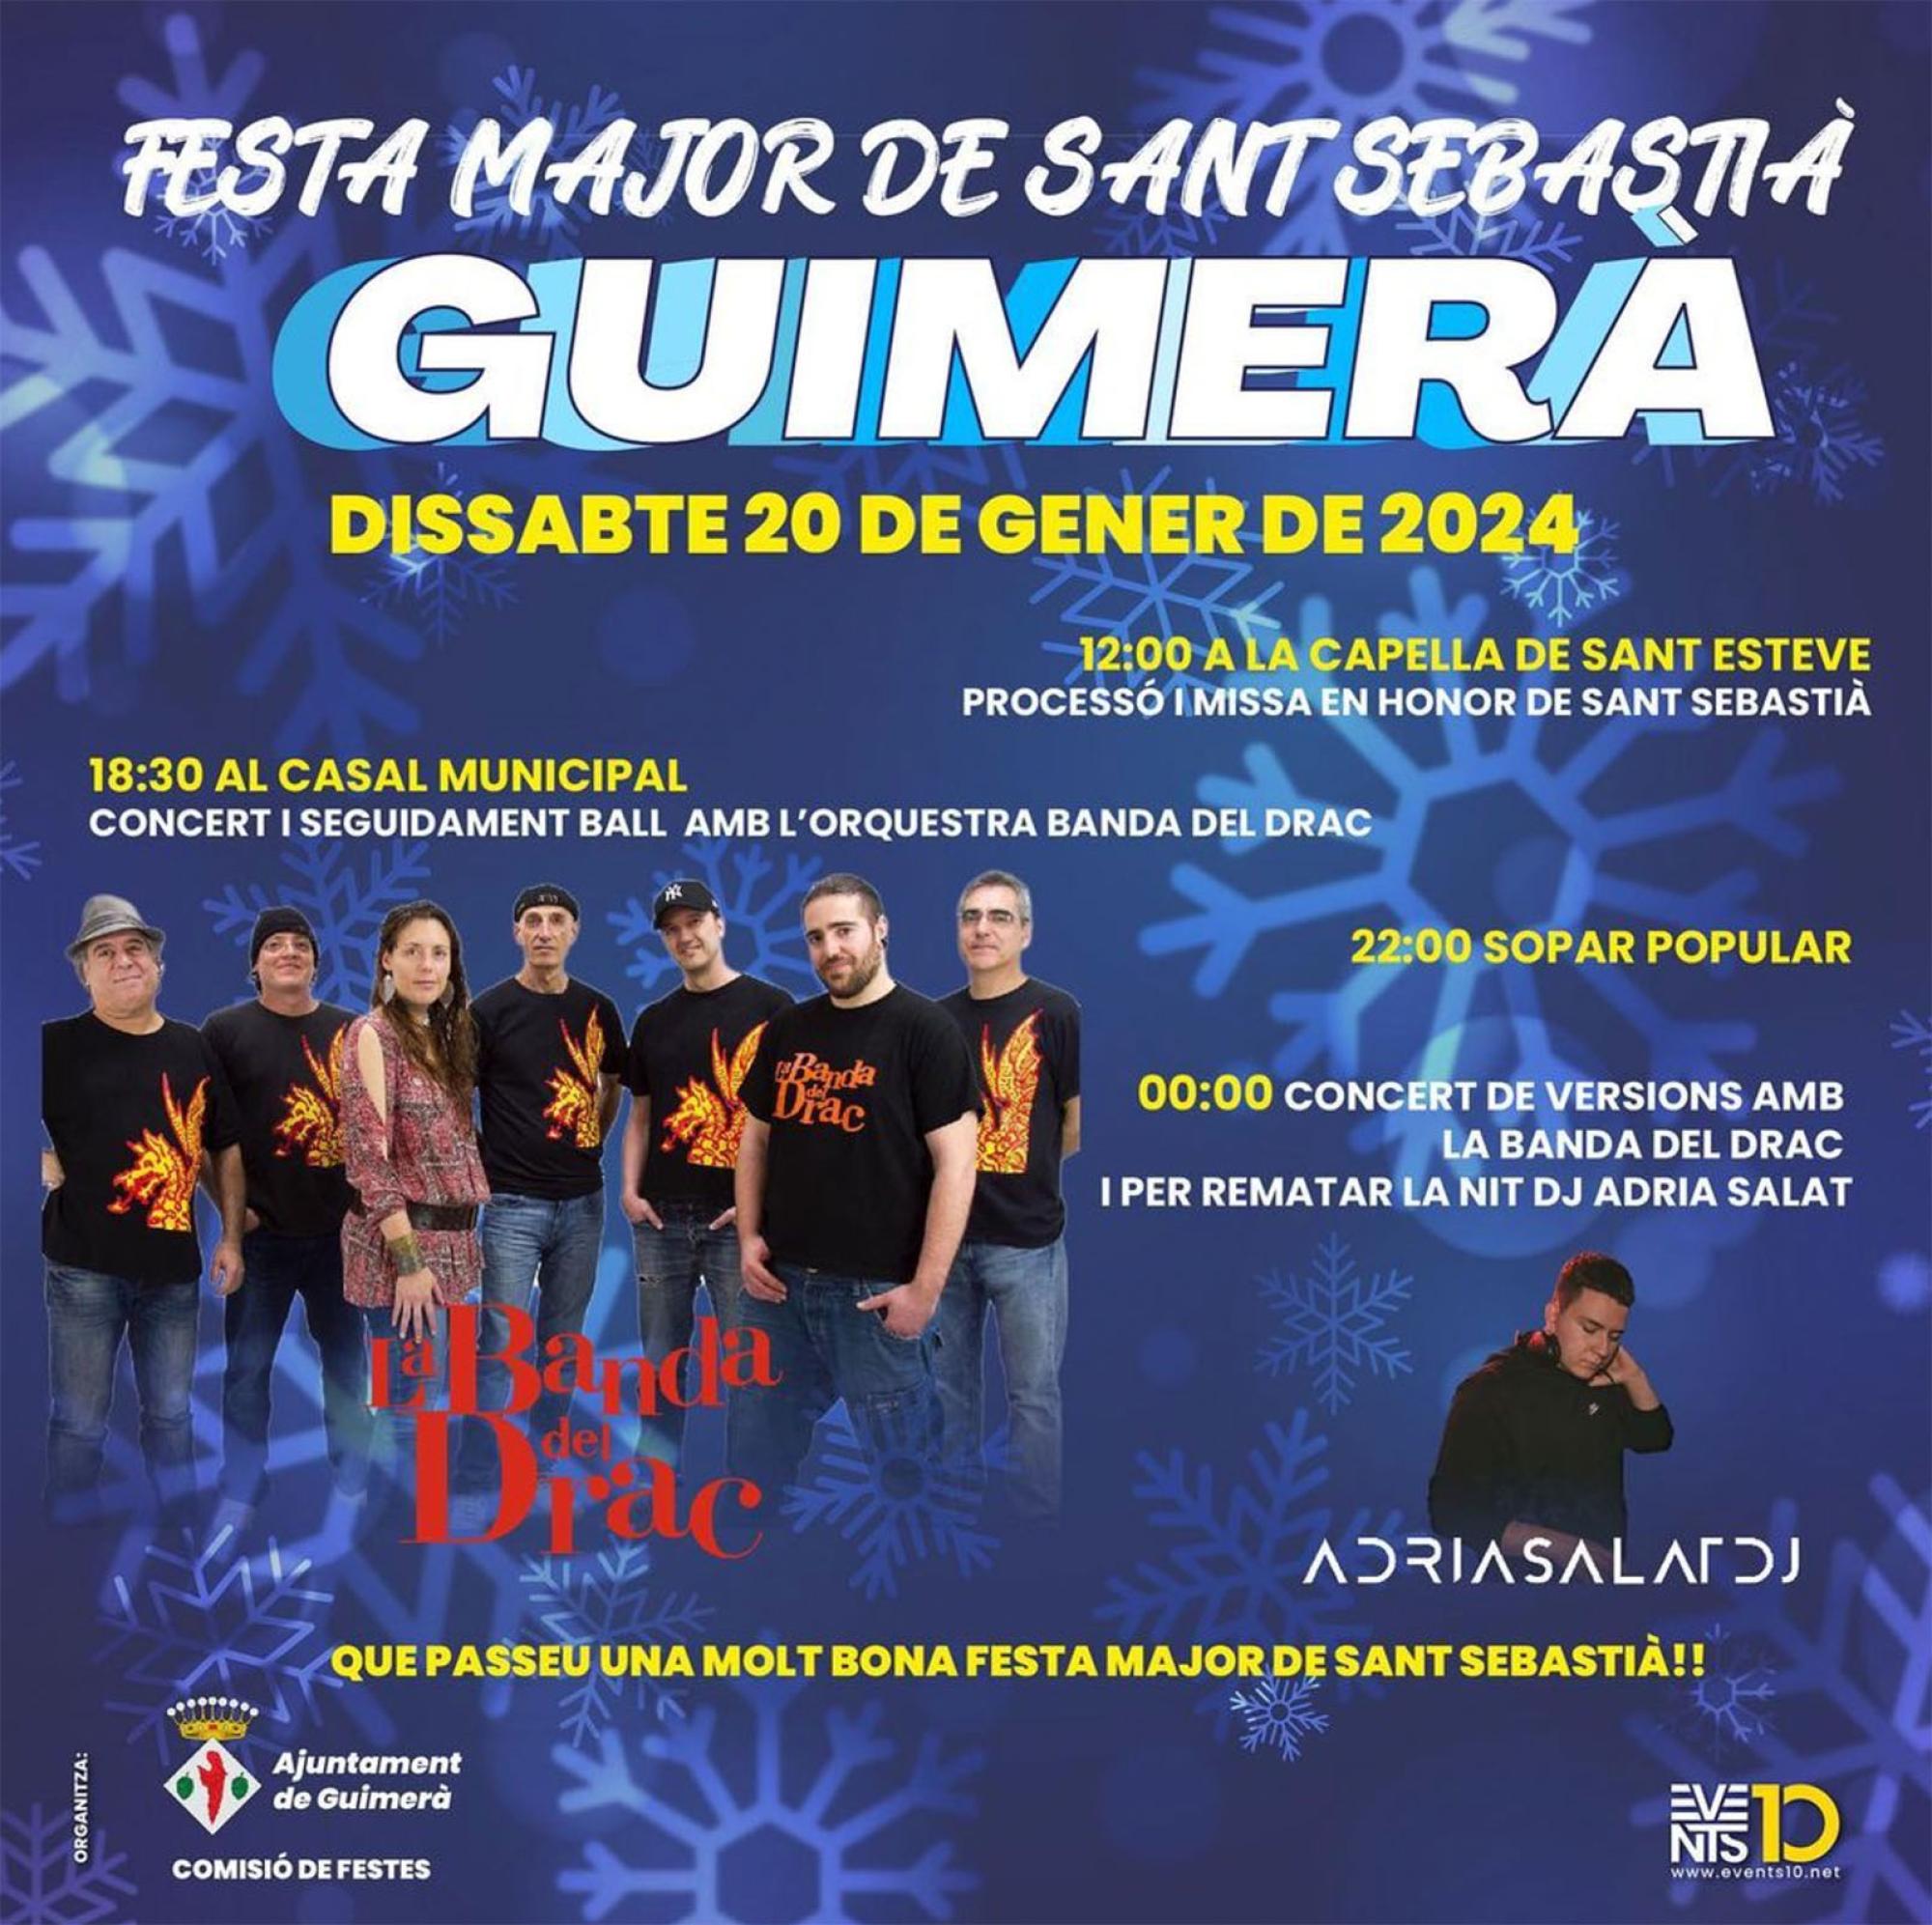 cartell Festa Major de Sant Sebastià 2024 a Guimerà